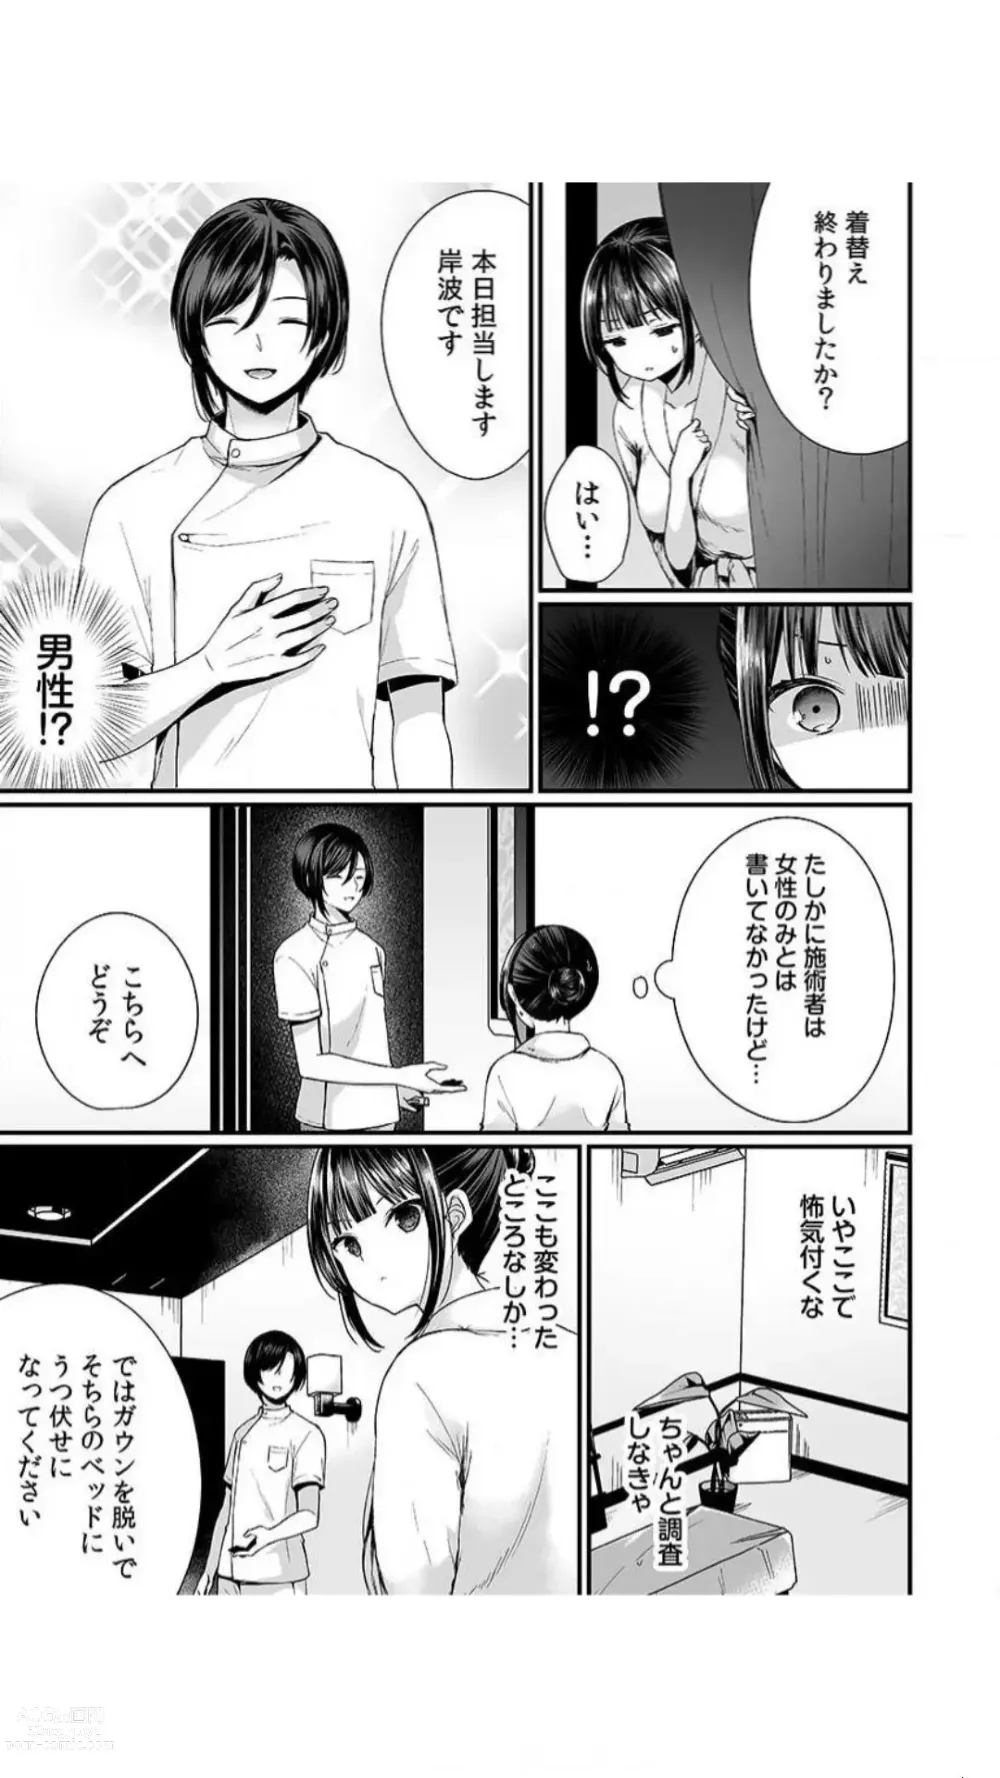 Page 7 of manga Ikasare Sugite Chousa Muri... Sennyuu! Uwasa no Kaikan Massage-ten